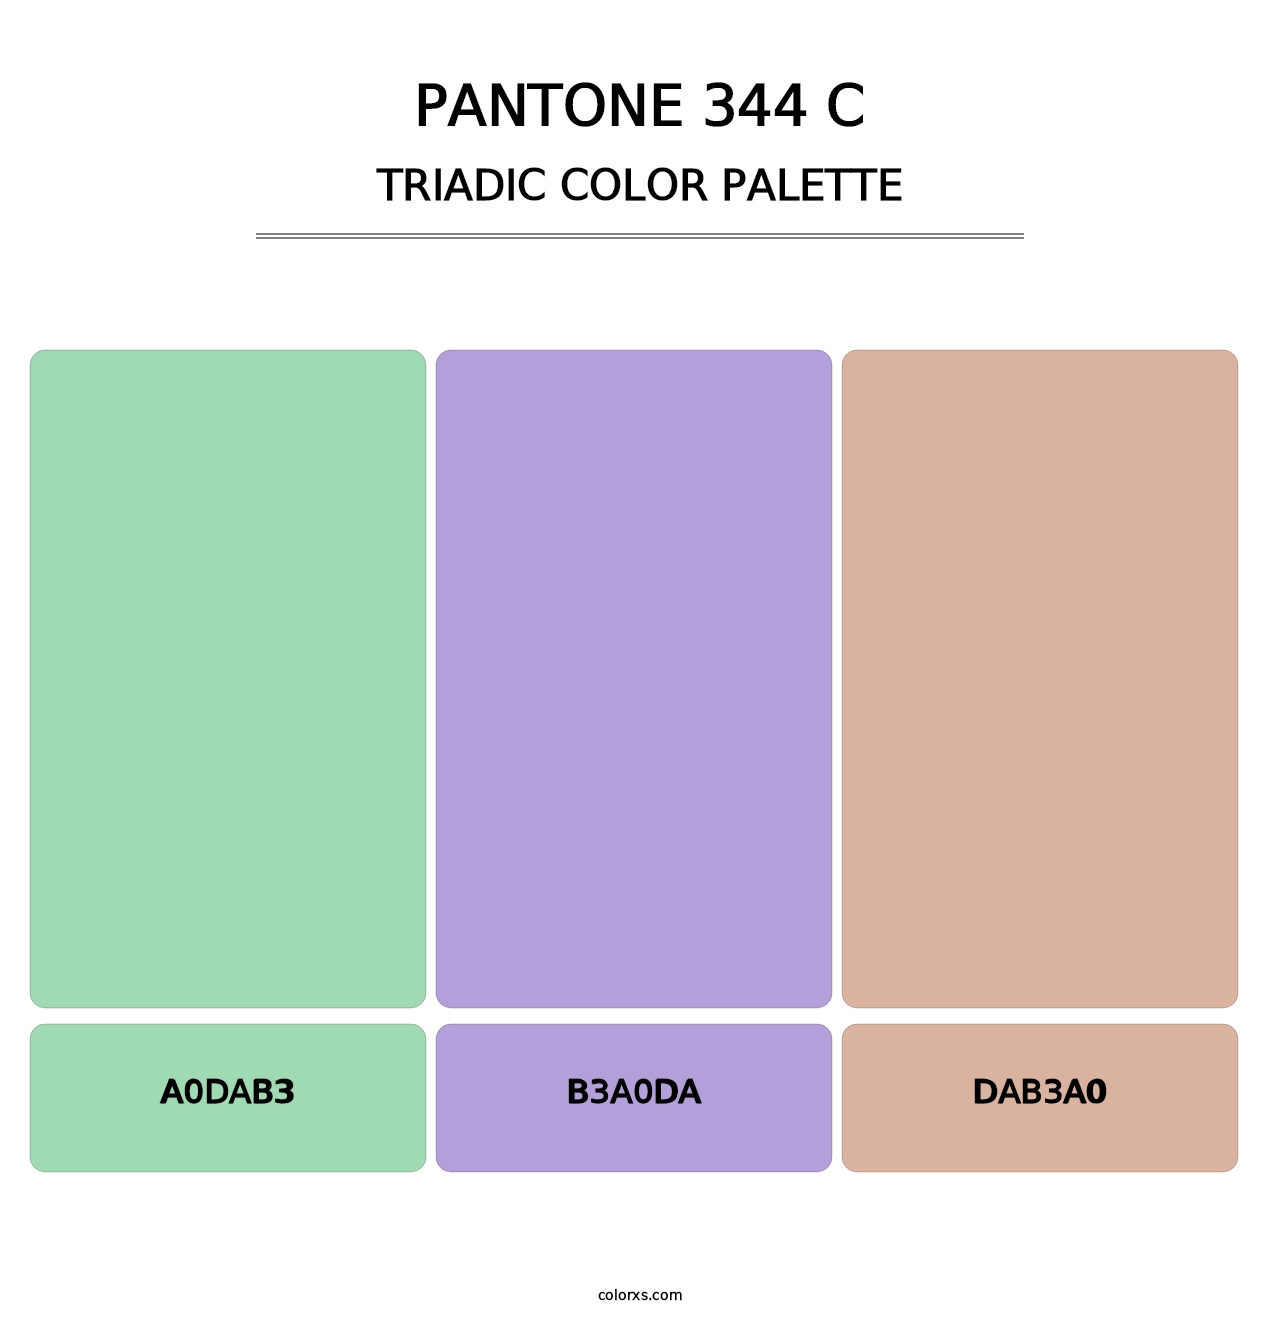 PANTONE 344 C - Triadic Color Palette